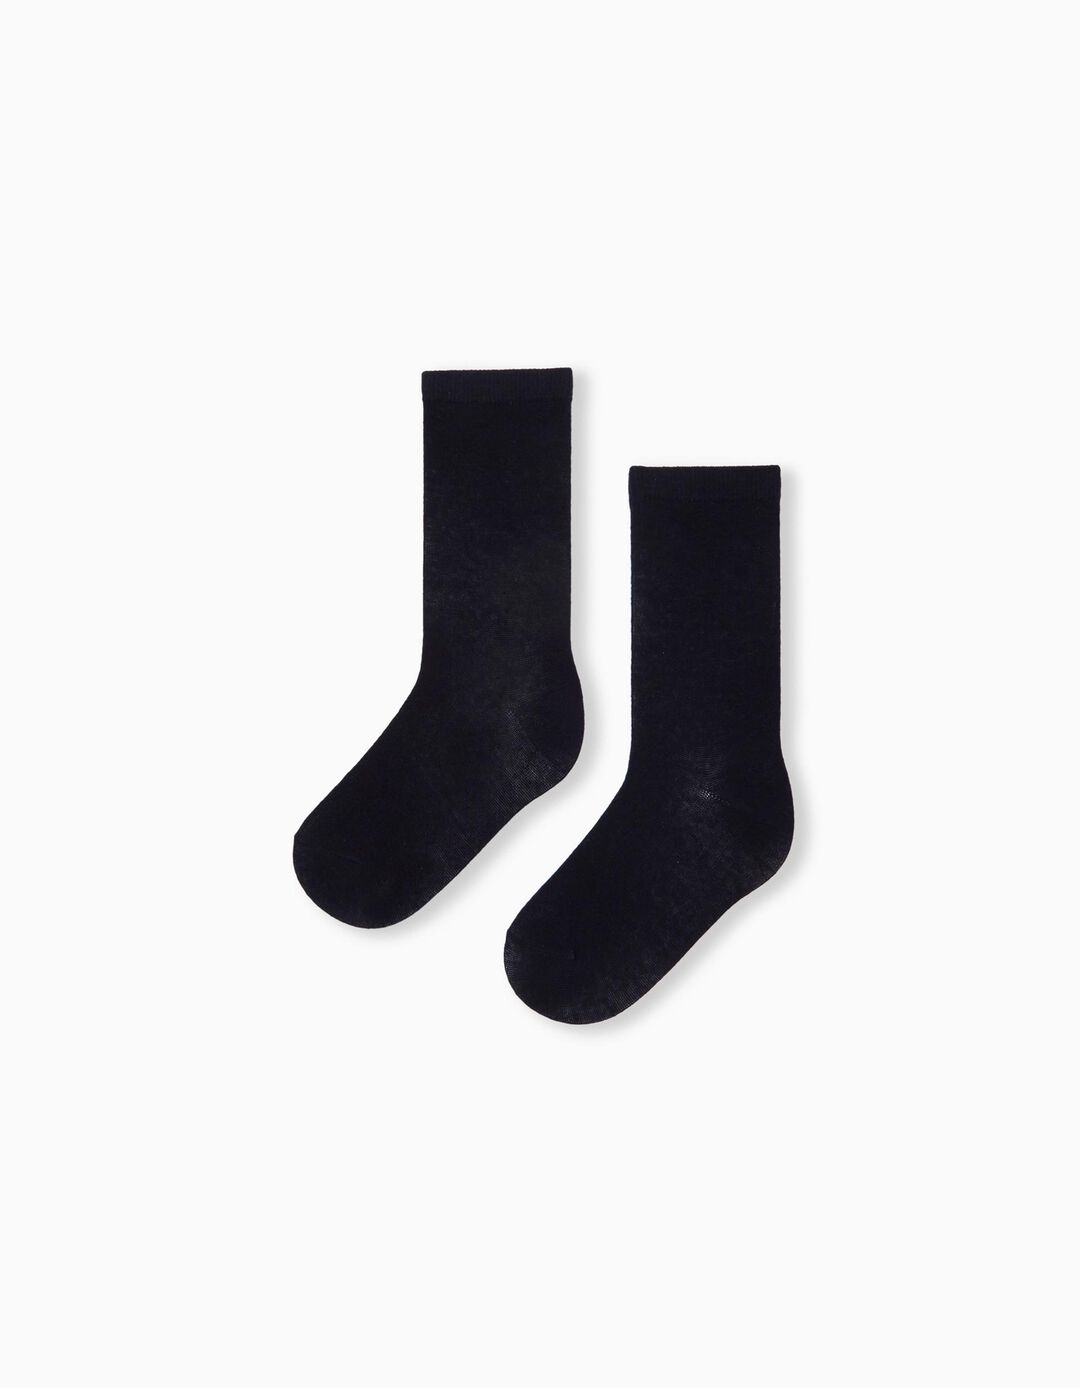 2 Pairs of Socks Pack, Boys, Dark Blue